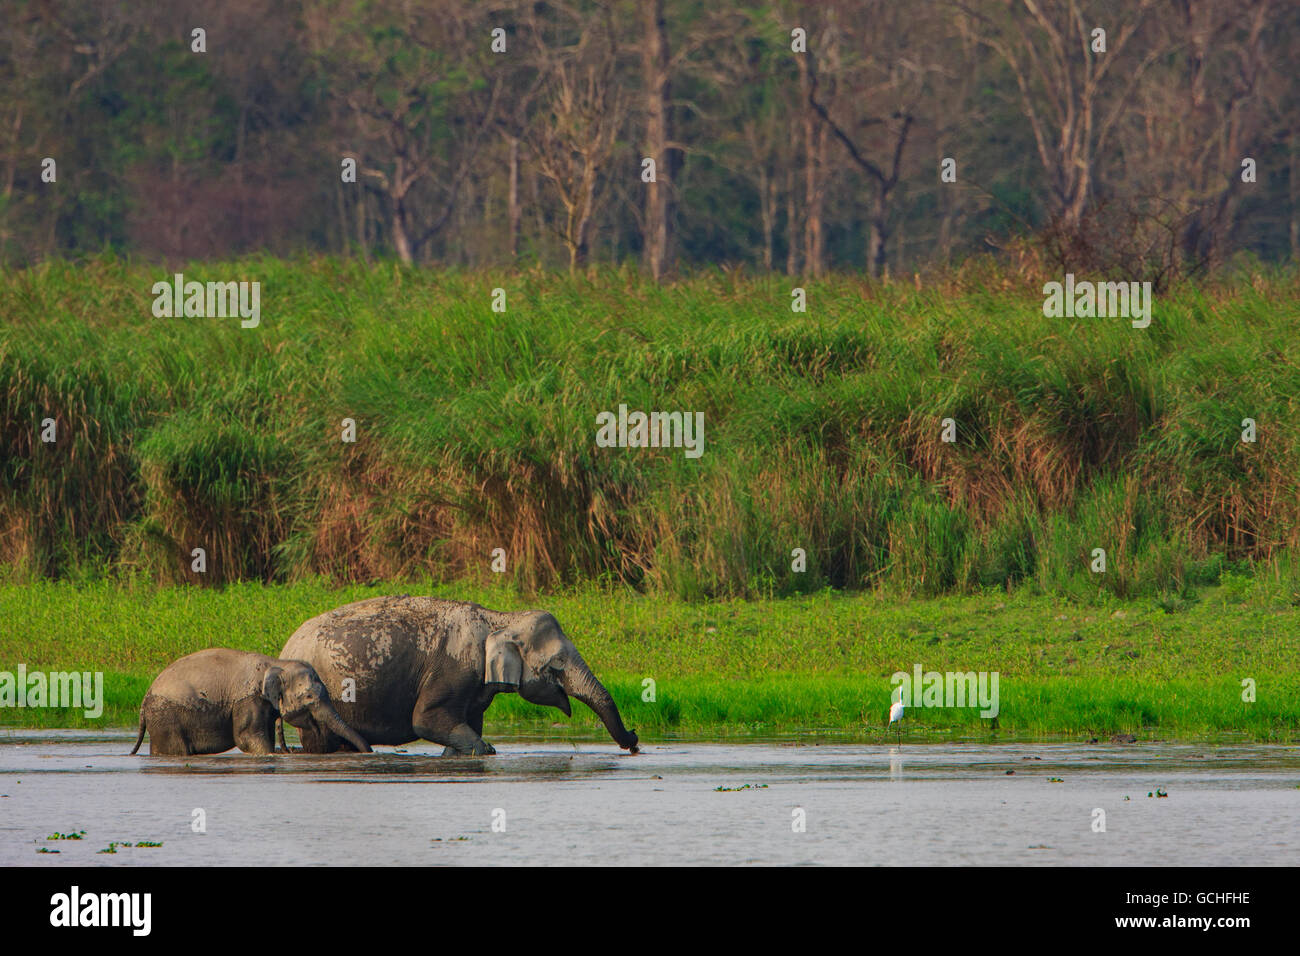 Mère et bébé éléphant de vous rafraîchir dans l'eau : image prise dans le parc national de Kaziranga Inde) Banque D'Images